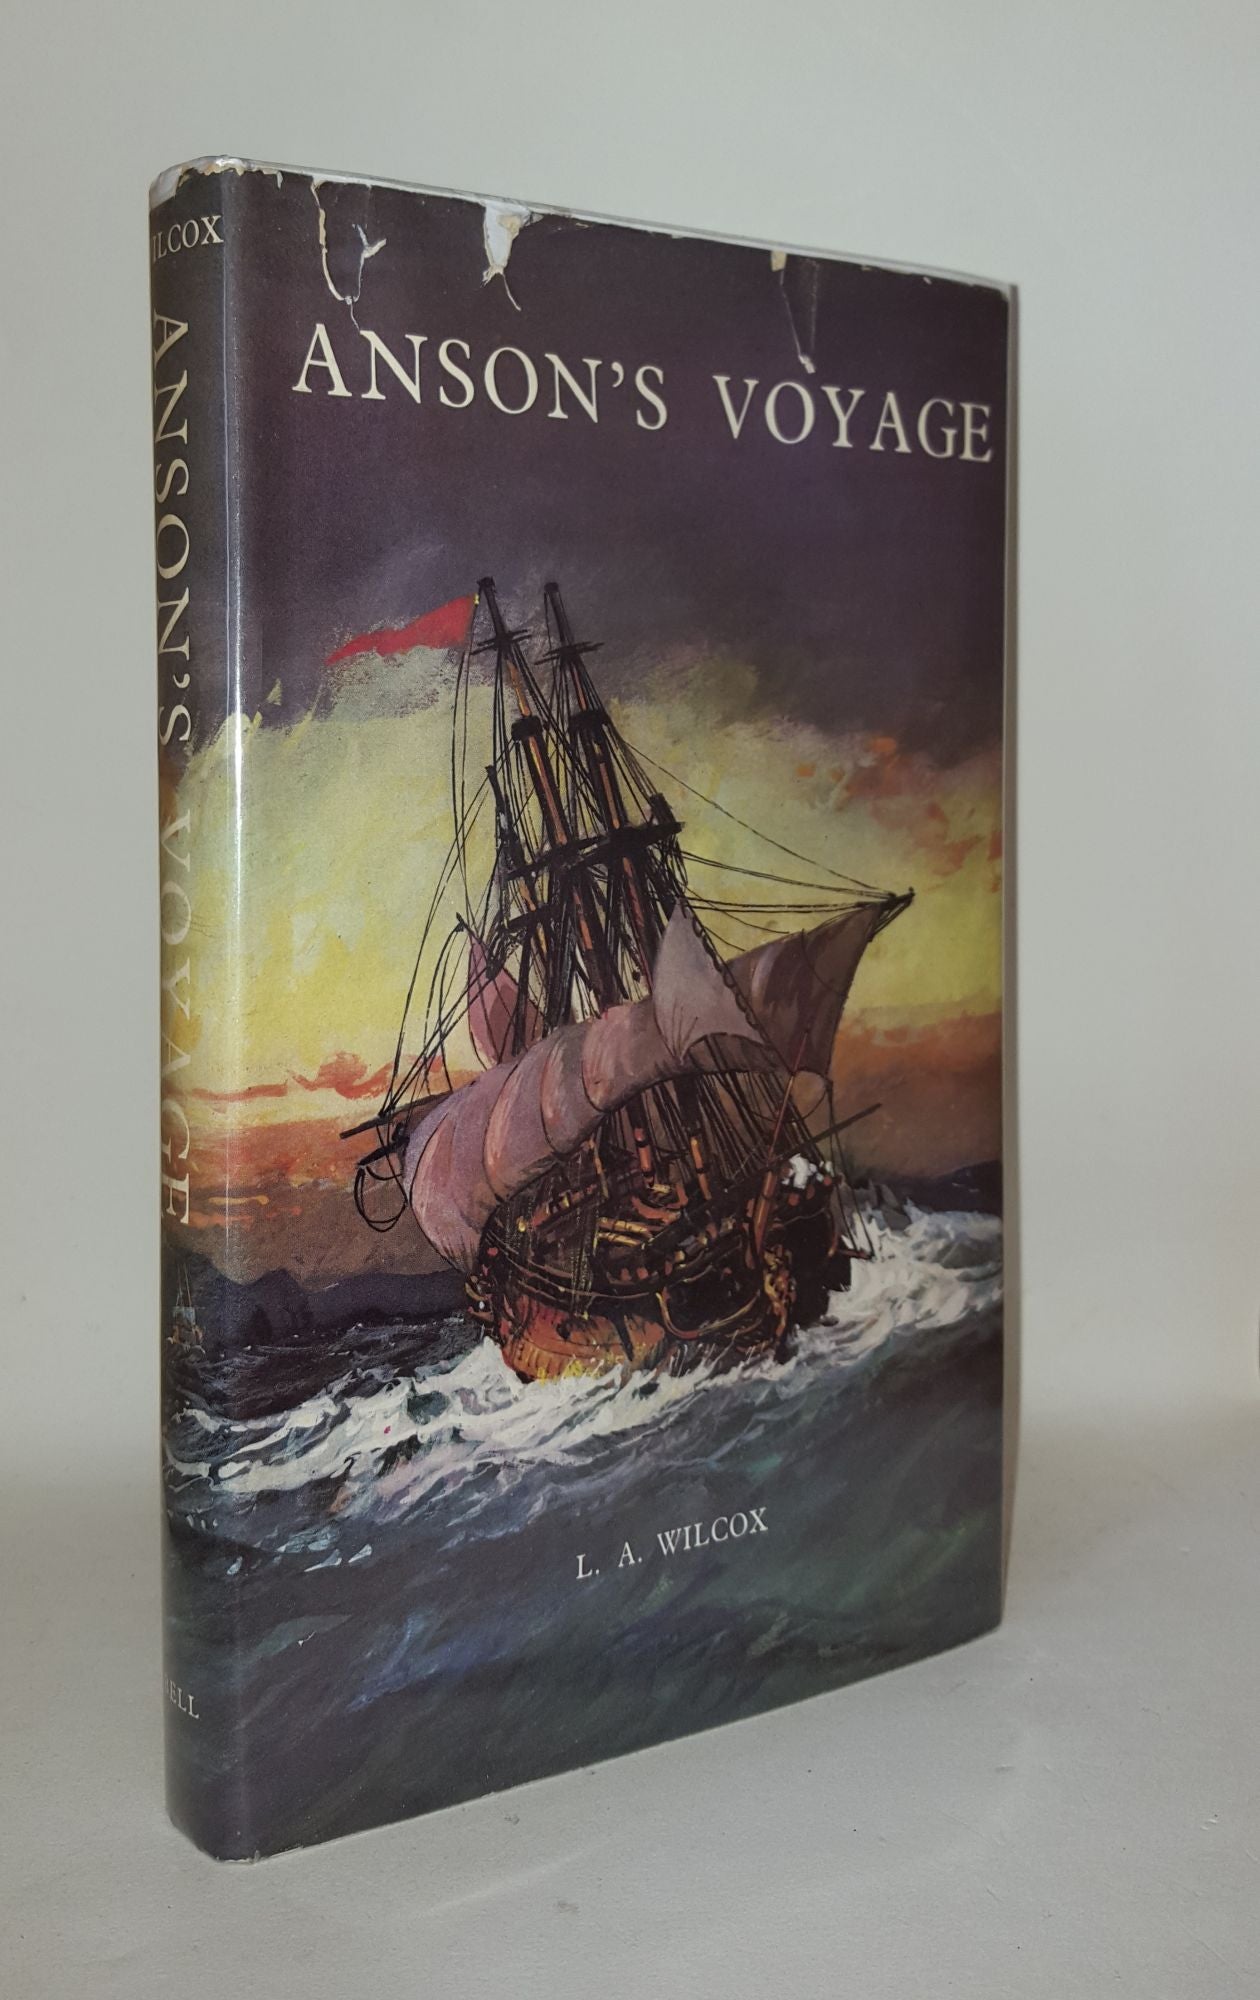 WILCOX L.A. - Anson's Voyage